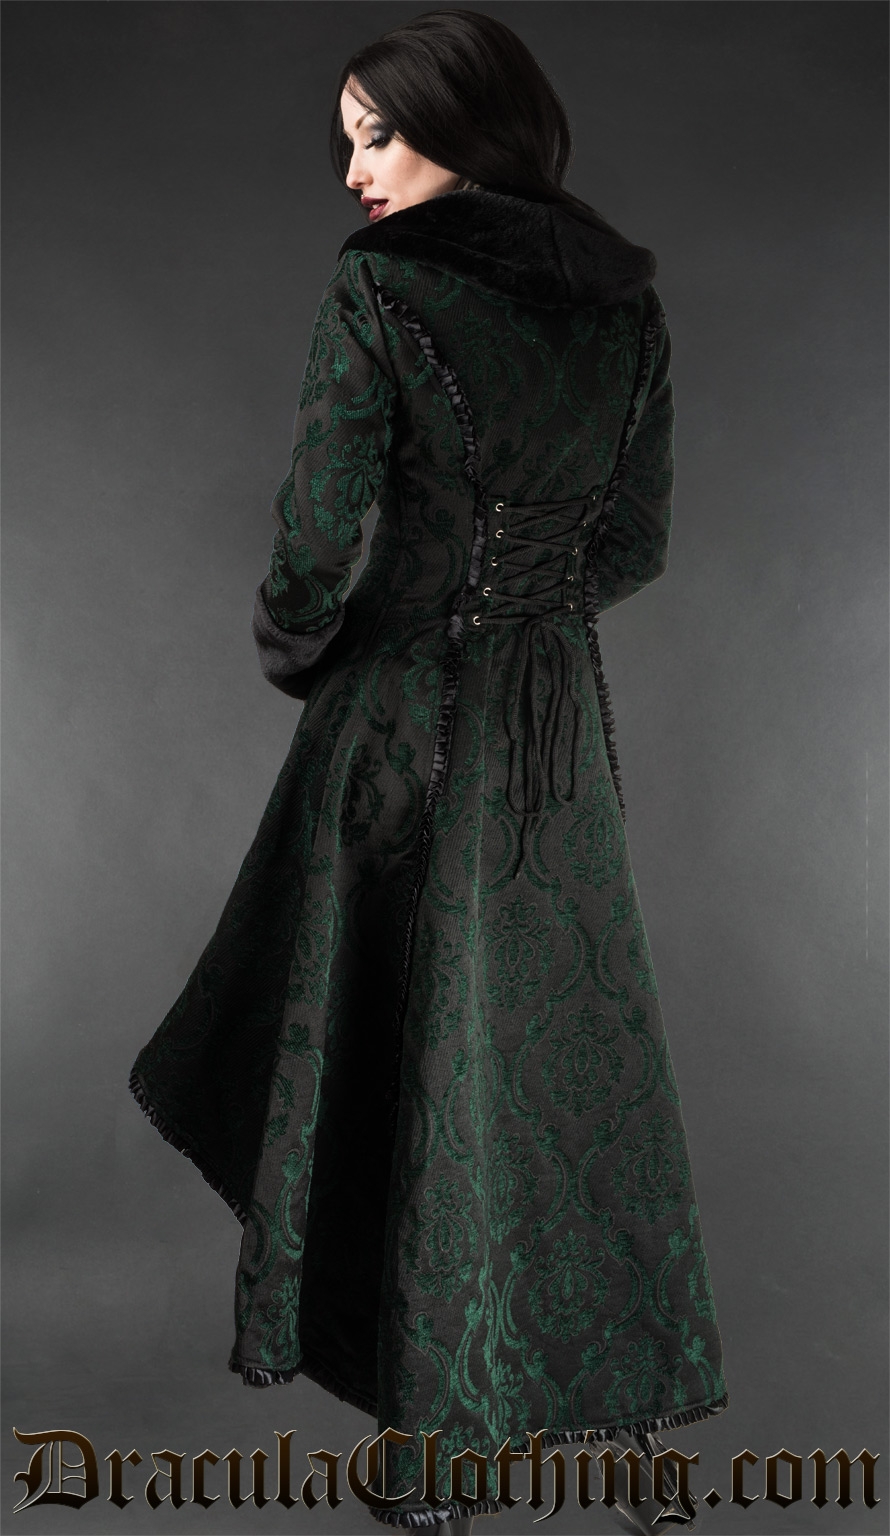 Green Evil Princess Coat